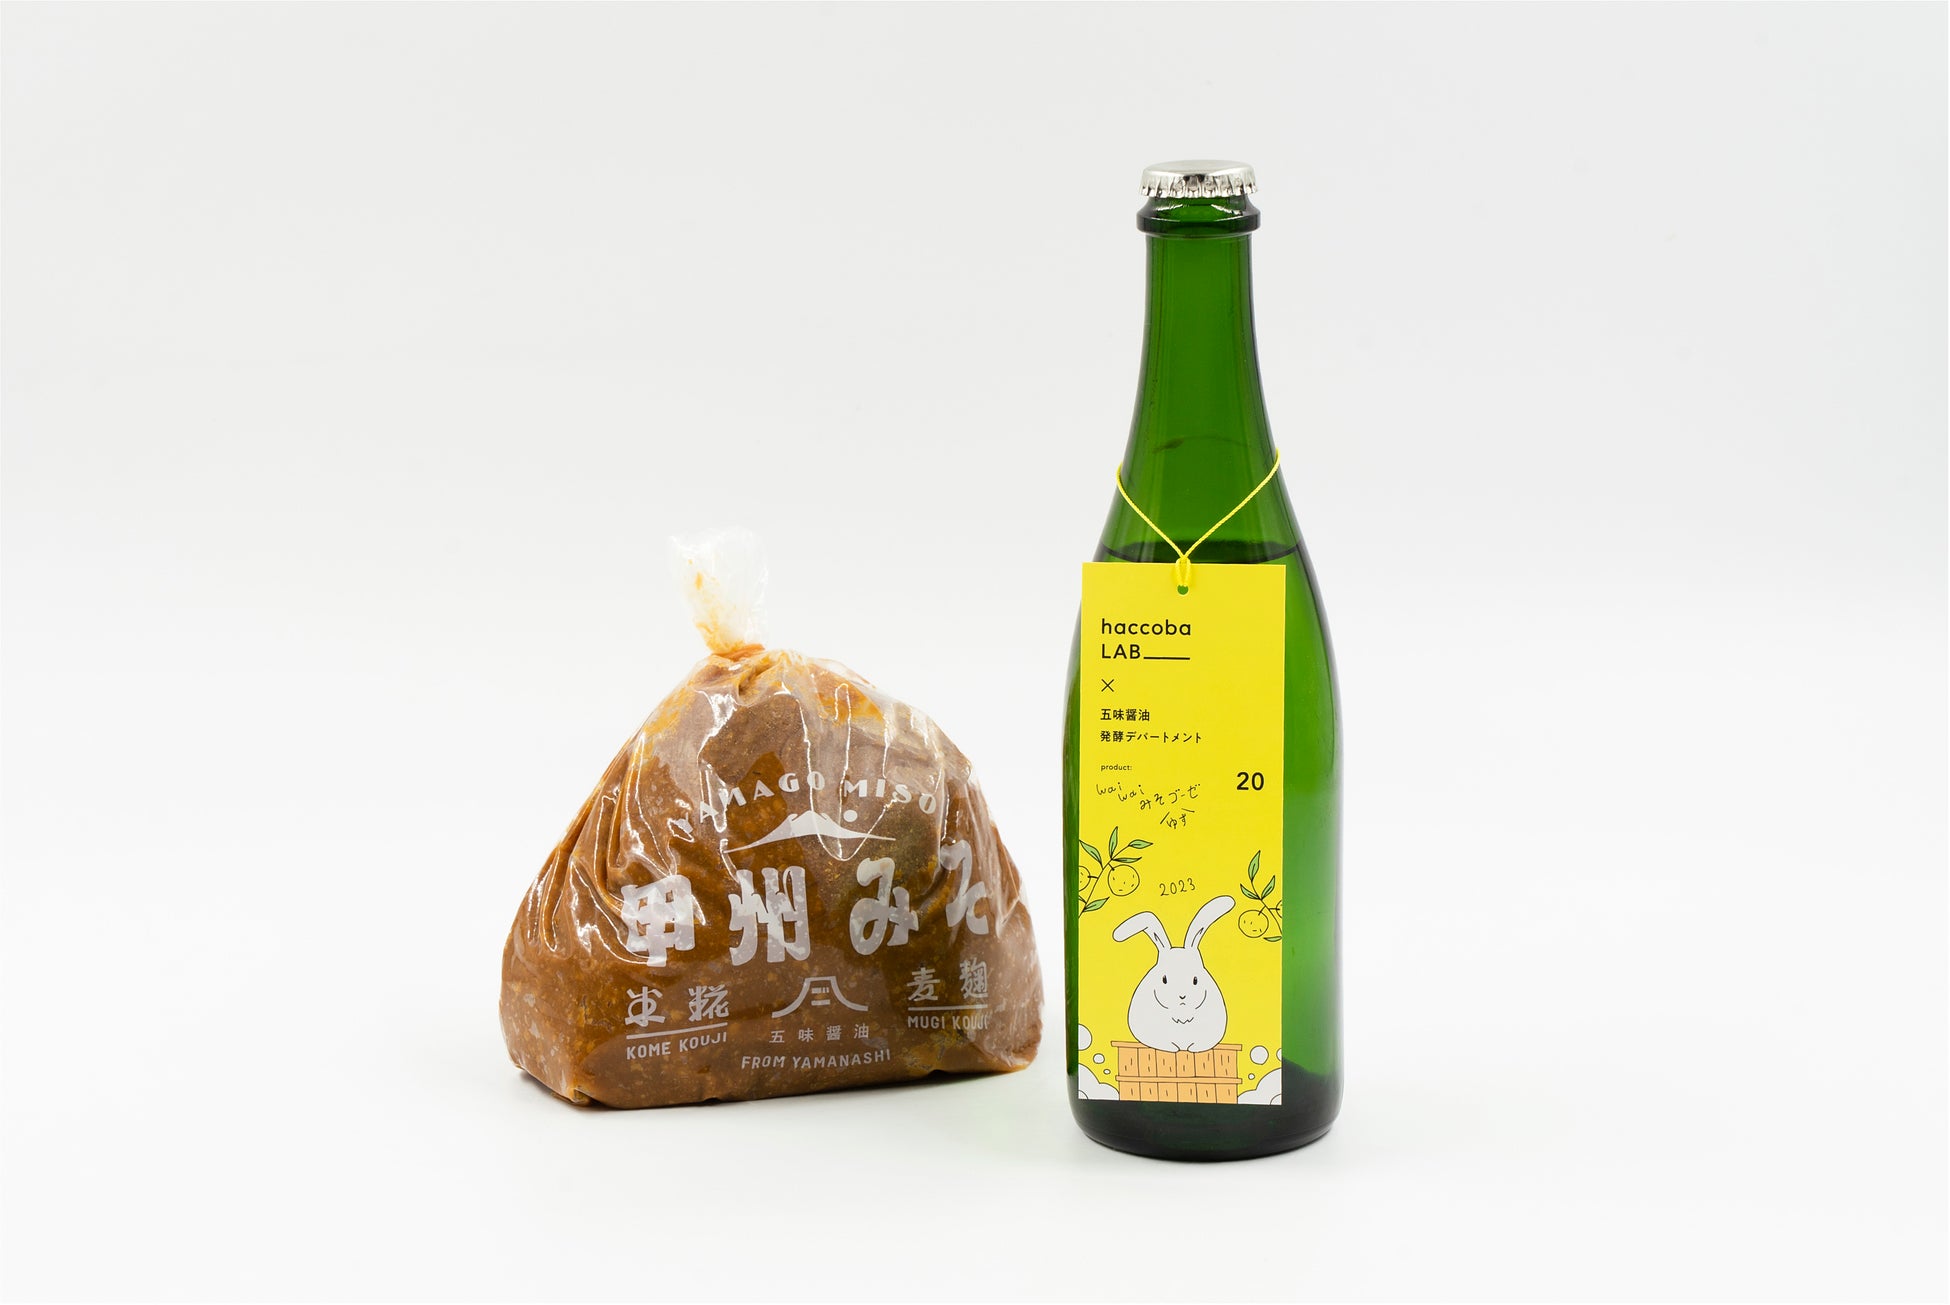 【五味醤油×発酵デパートメント×haccoba】ビールのゴーゼをモチーフに、お米と一緒に味噌を発酵させたSakeの第2弾「WaiWaiゆずみそゴーゼ」。haccobaより3月2日発売。